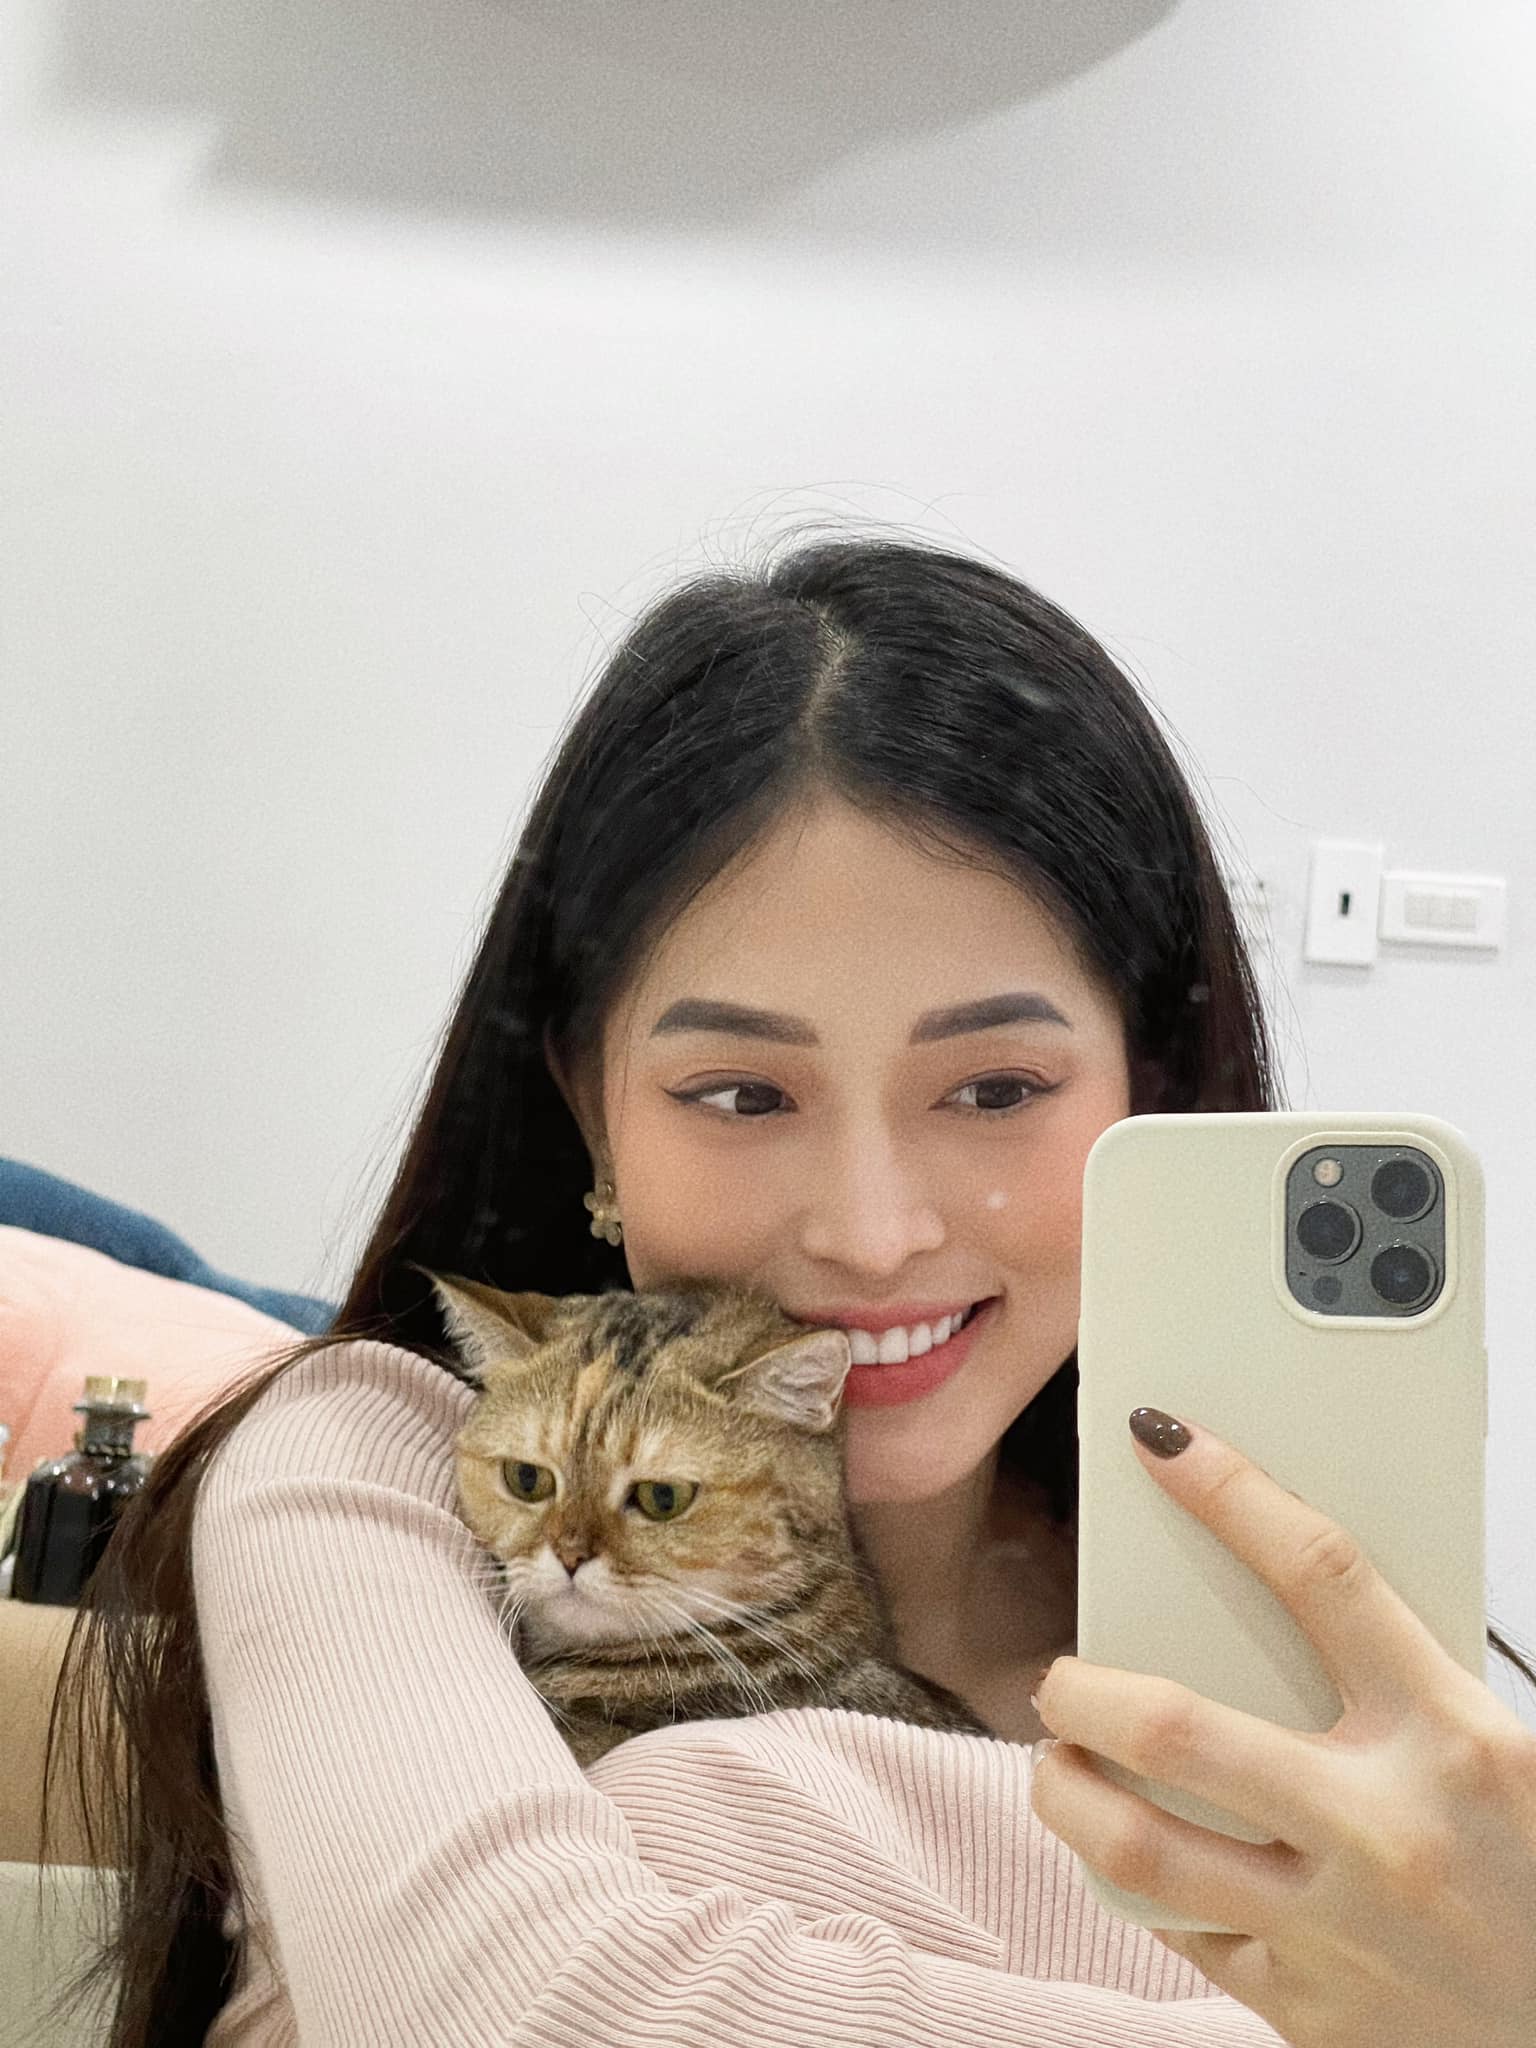 Phương Nga selfie bên mèo cưng và hỏi han tình hình điểm thi của các sĩ tử 2k3. 'Các sĩ tử thi kết quả như nào rùi ạ, chia sẻ cho tui biết với', cô viết.